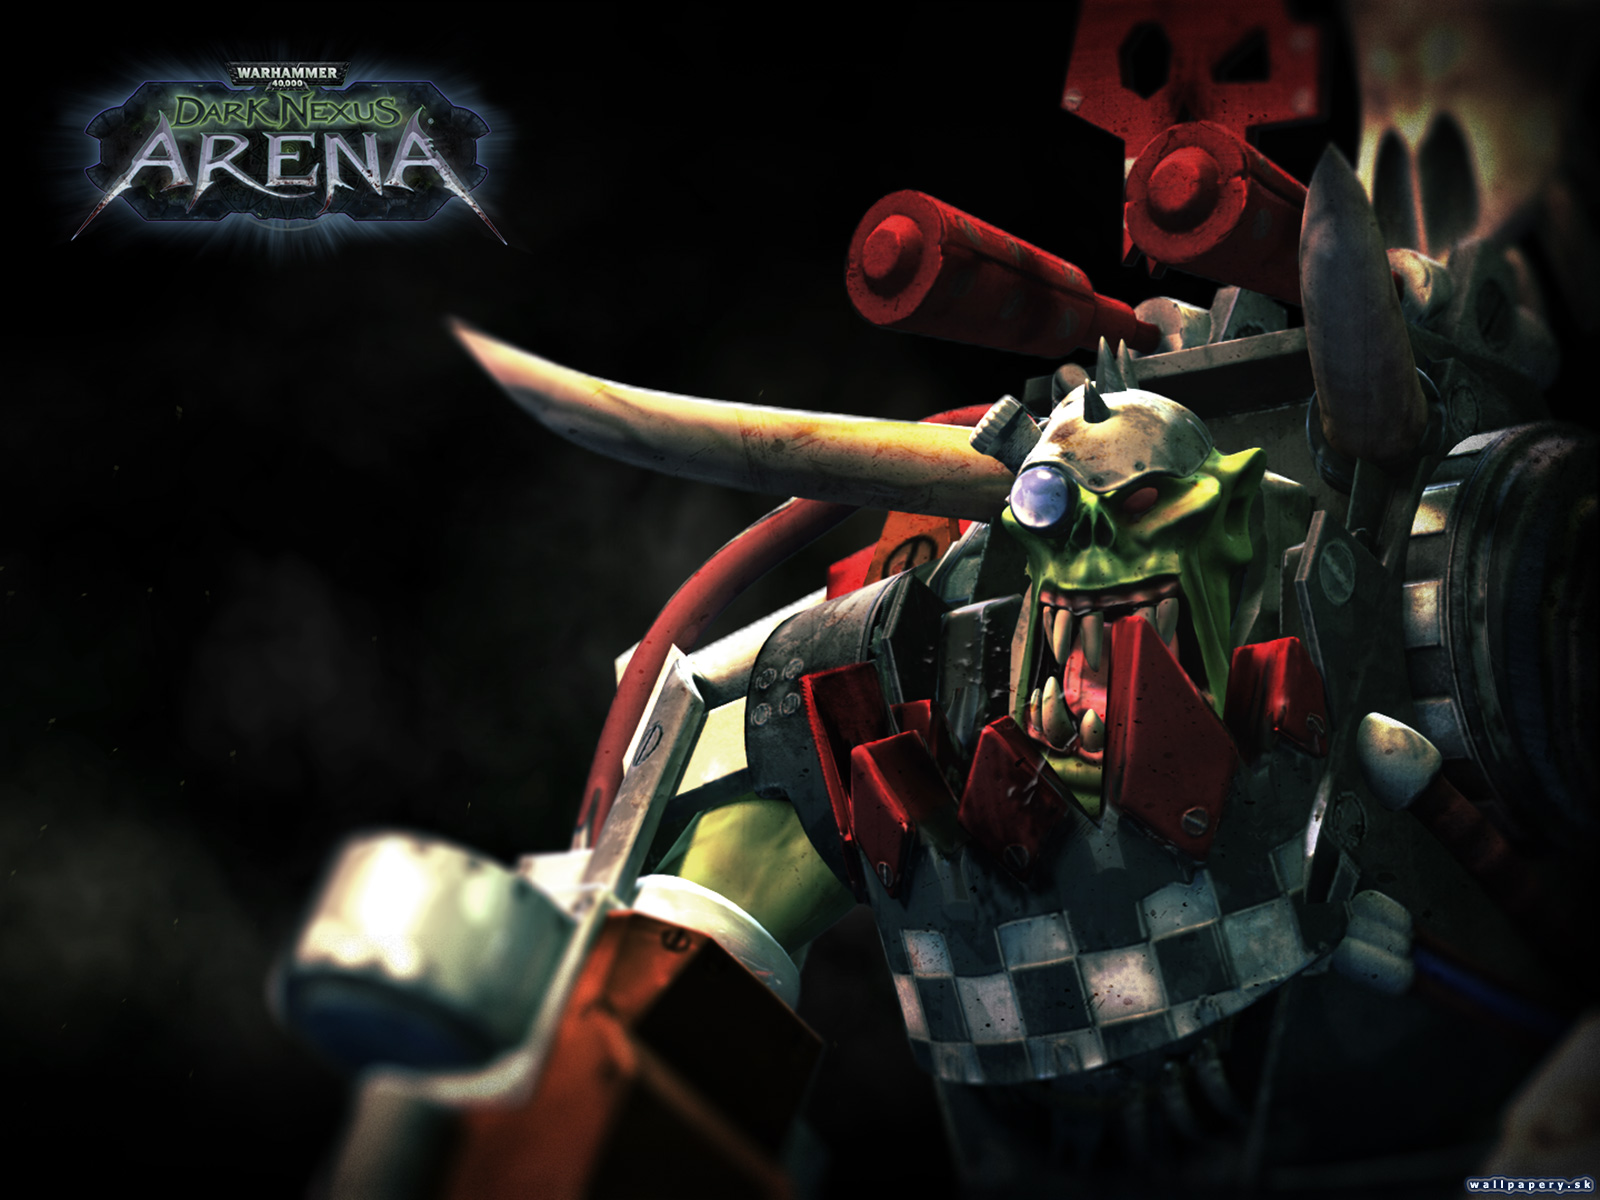 Warhammer 40,000: Dark Nexus Arena - wallpaper 2